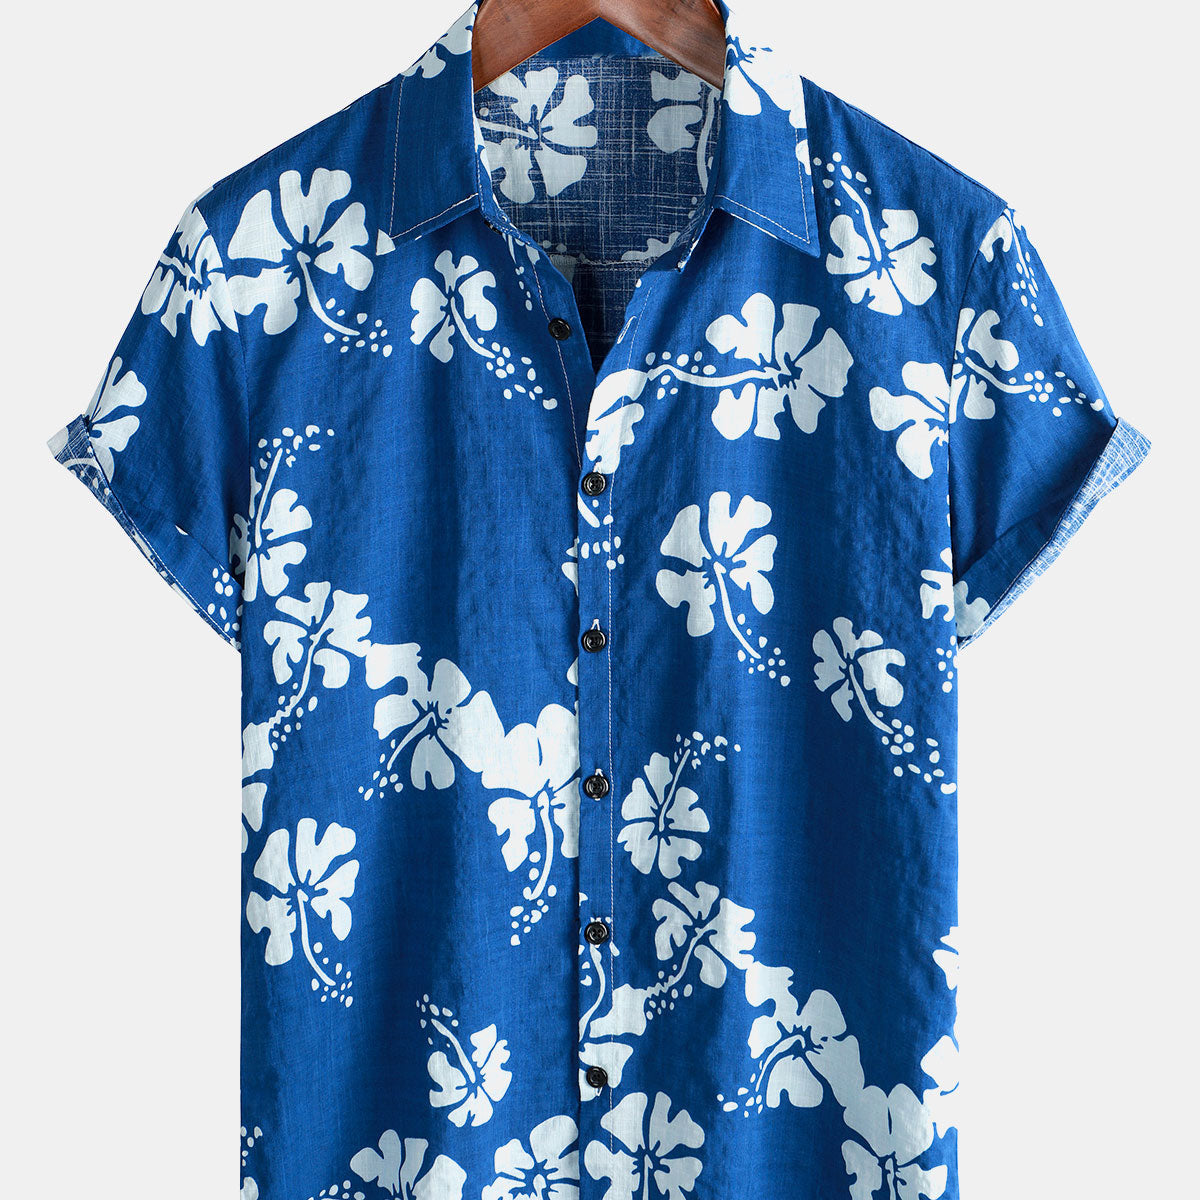 Men's Blue Floral Short Sleeve Beach Tropical Hawaiian Button Up Shirt